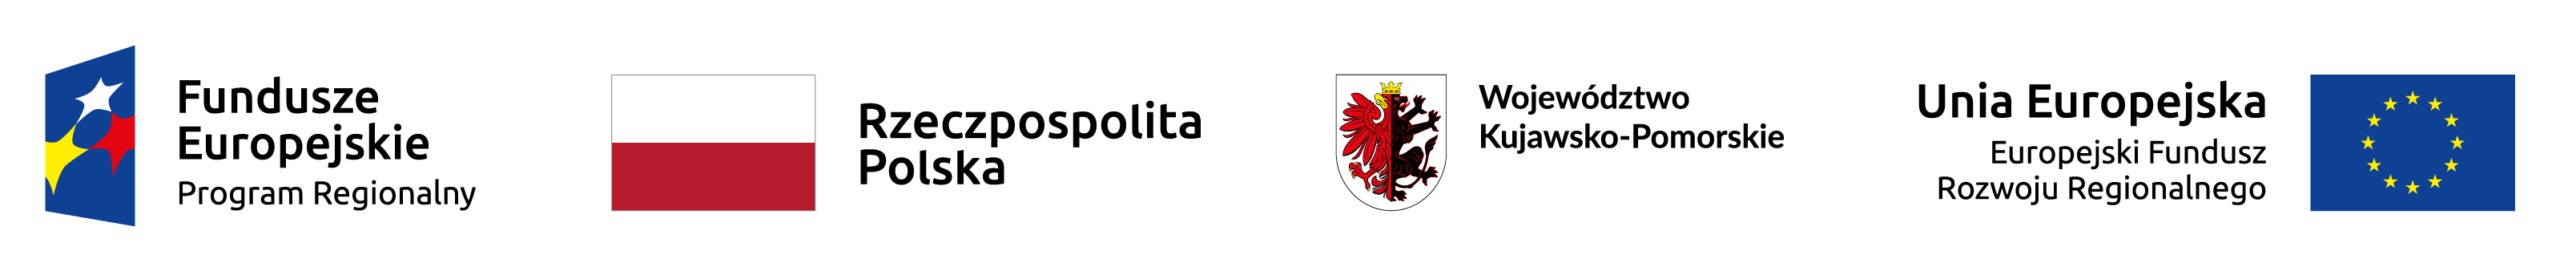 Logotypy Unijne wersja pl